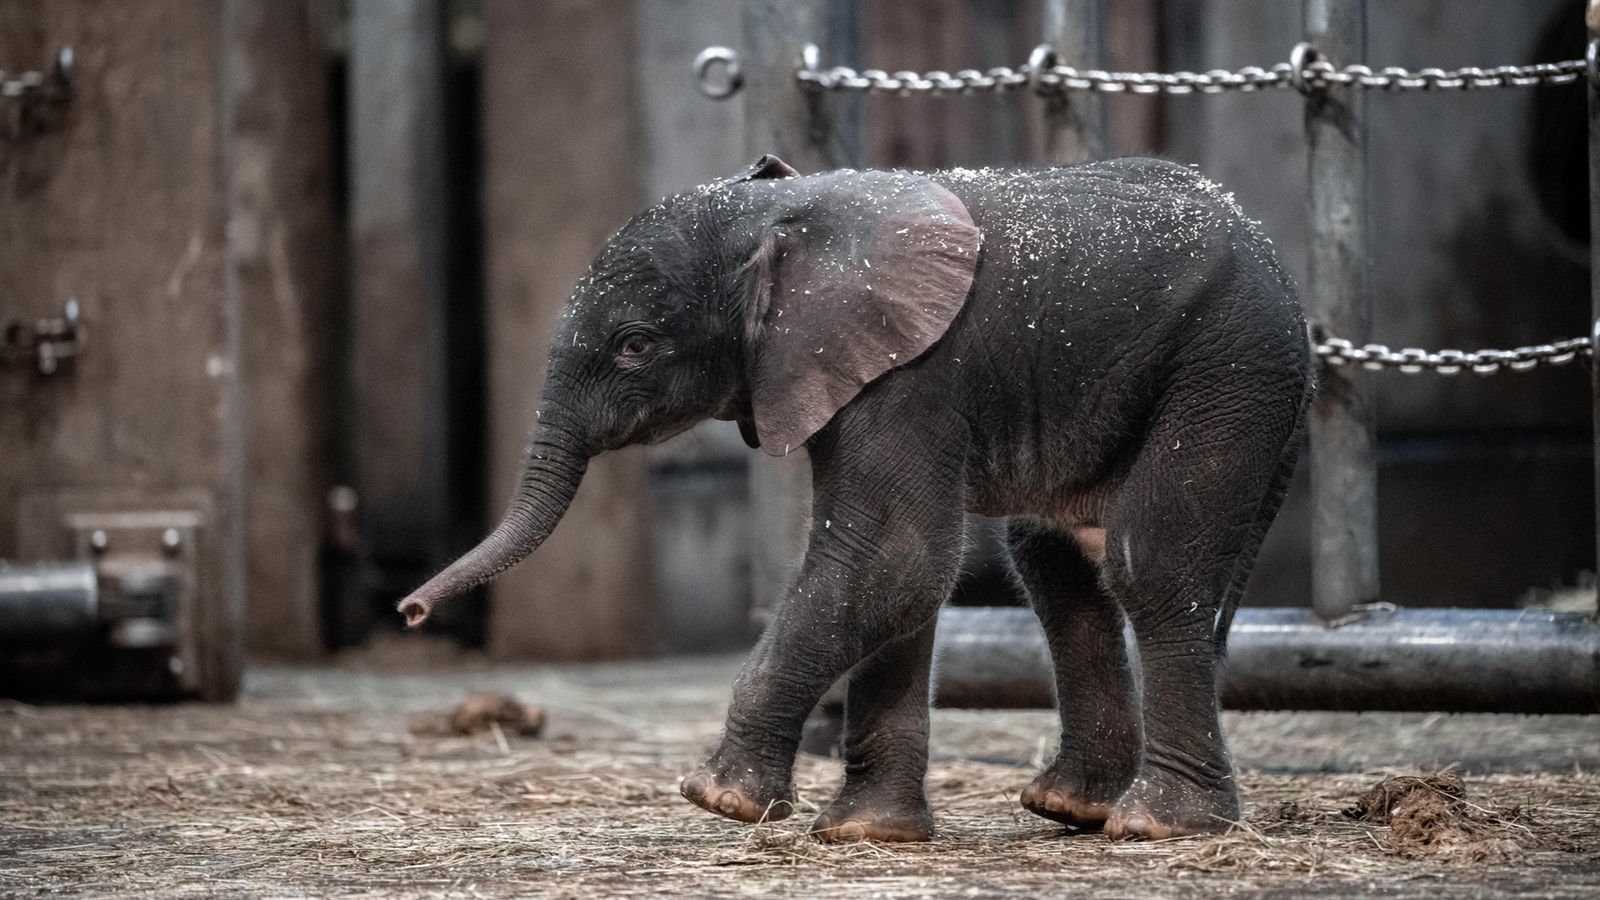 Elefantenjunge "Tsavo" im Gehege im Wuppertaler Zoo, März 2020